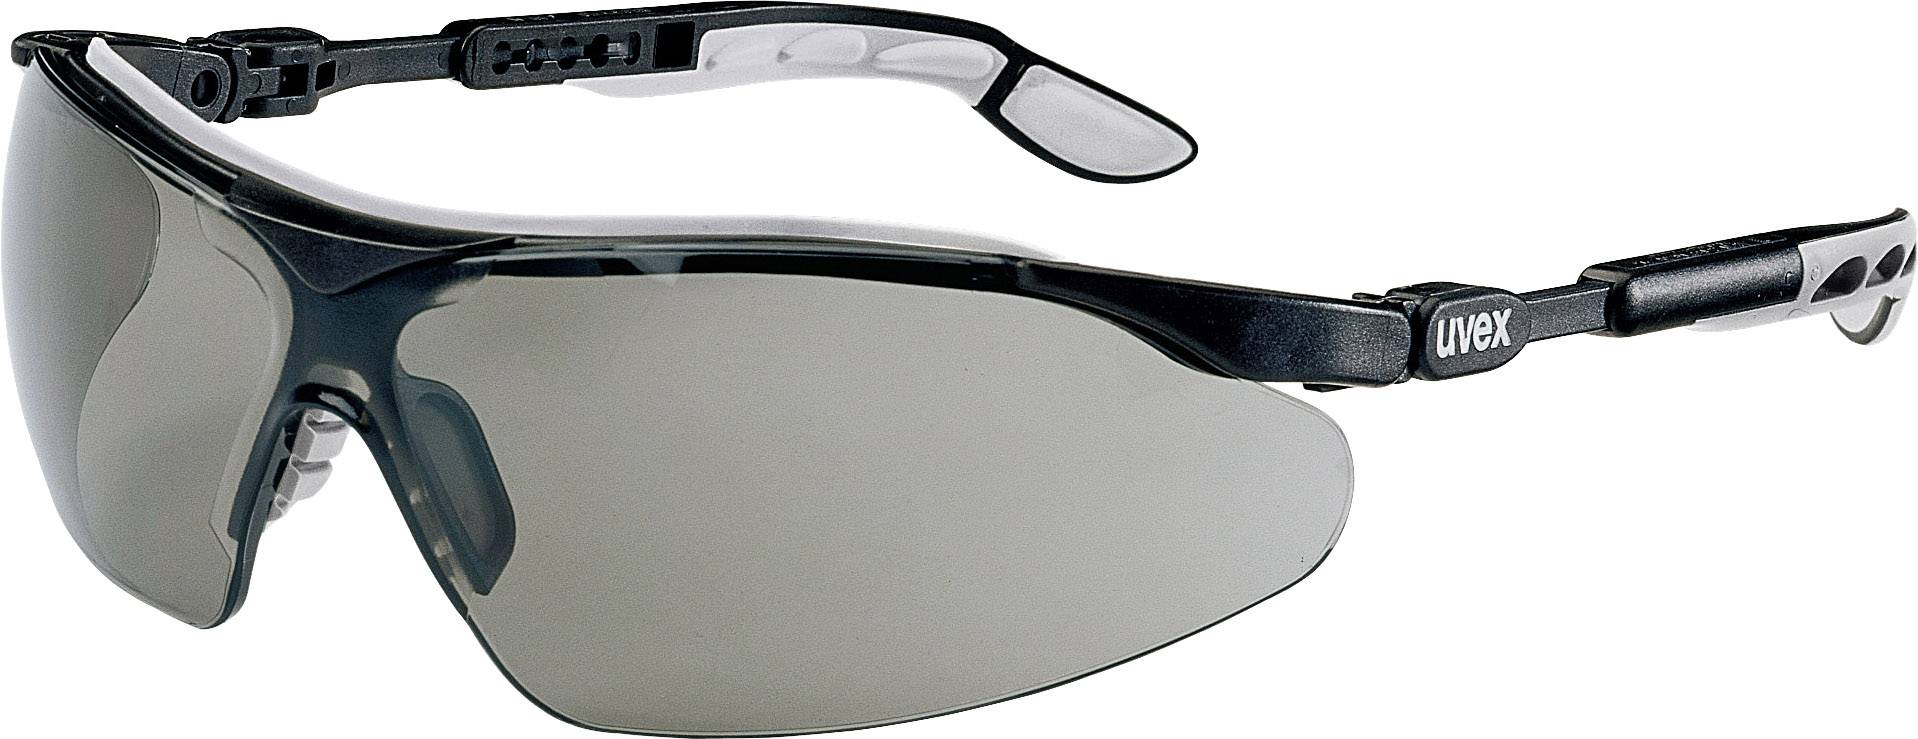 UVEX 9160076 Schutzbrille/Sicherheitsbrille Grau - Schwarz (9160076)